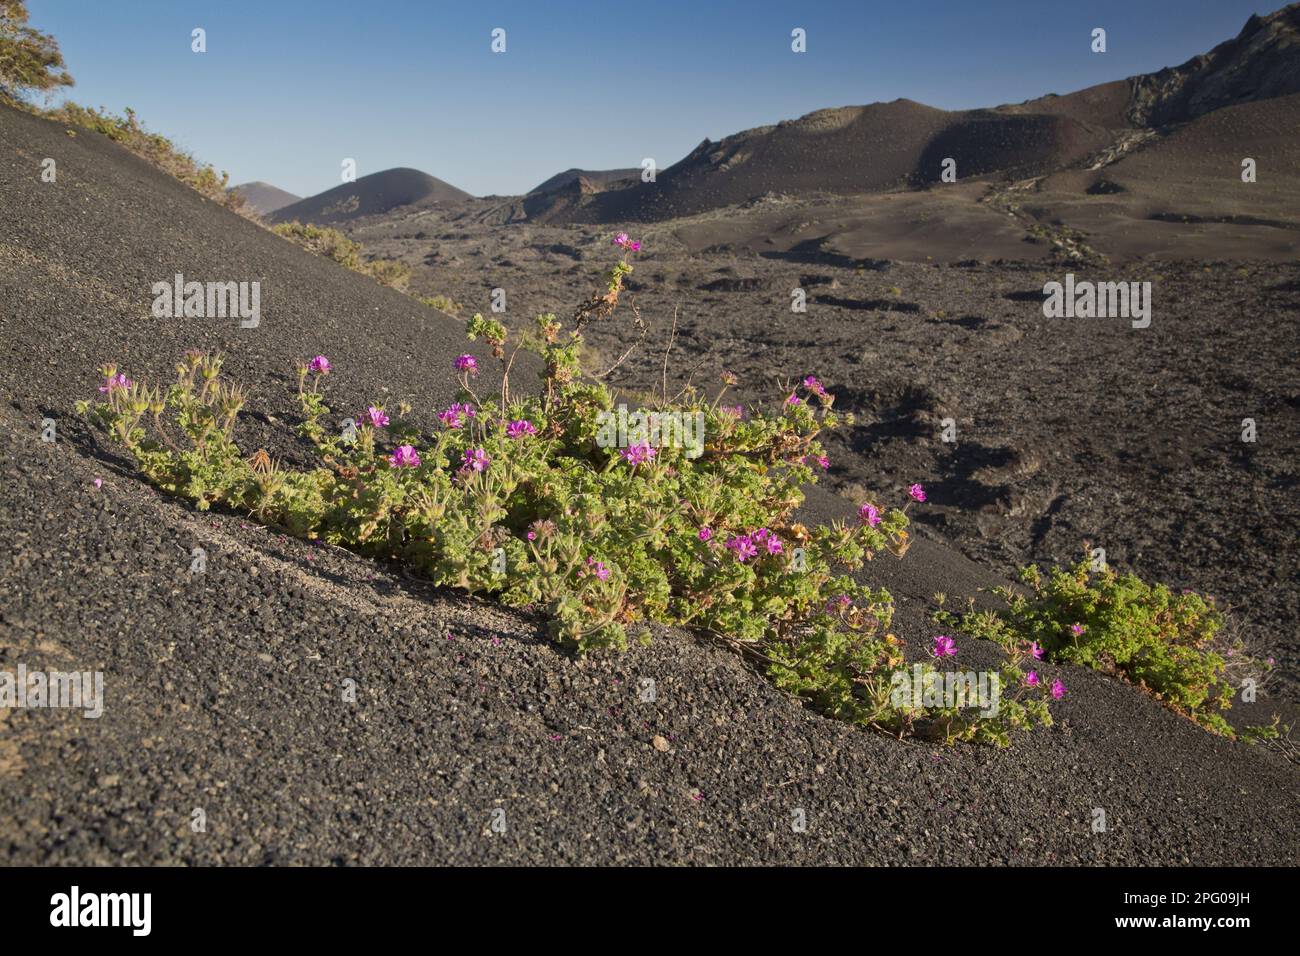 Rose-parfumée attar de roses (Pelargonium capitatum) introduit des espèces, la floraison, croissant sur la lave dans l'habitat volcanique, Lanzarote, îles Canaries Banque D'Images